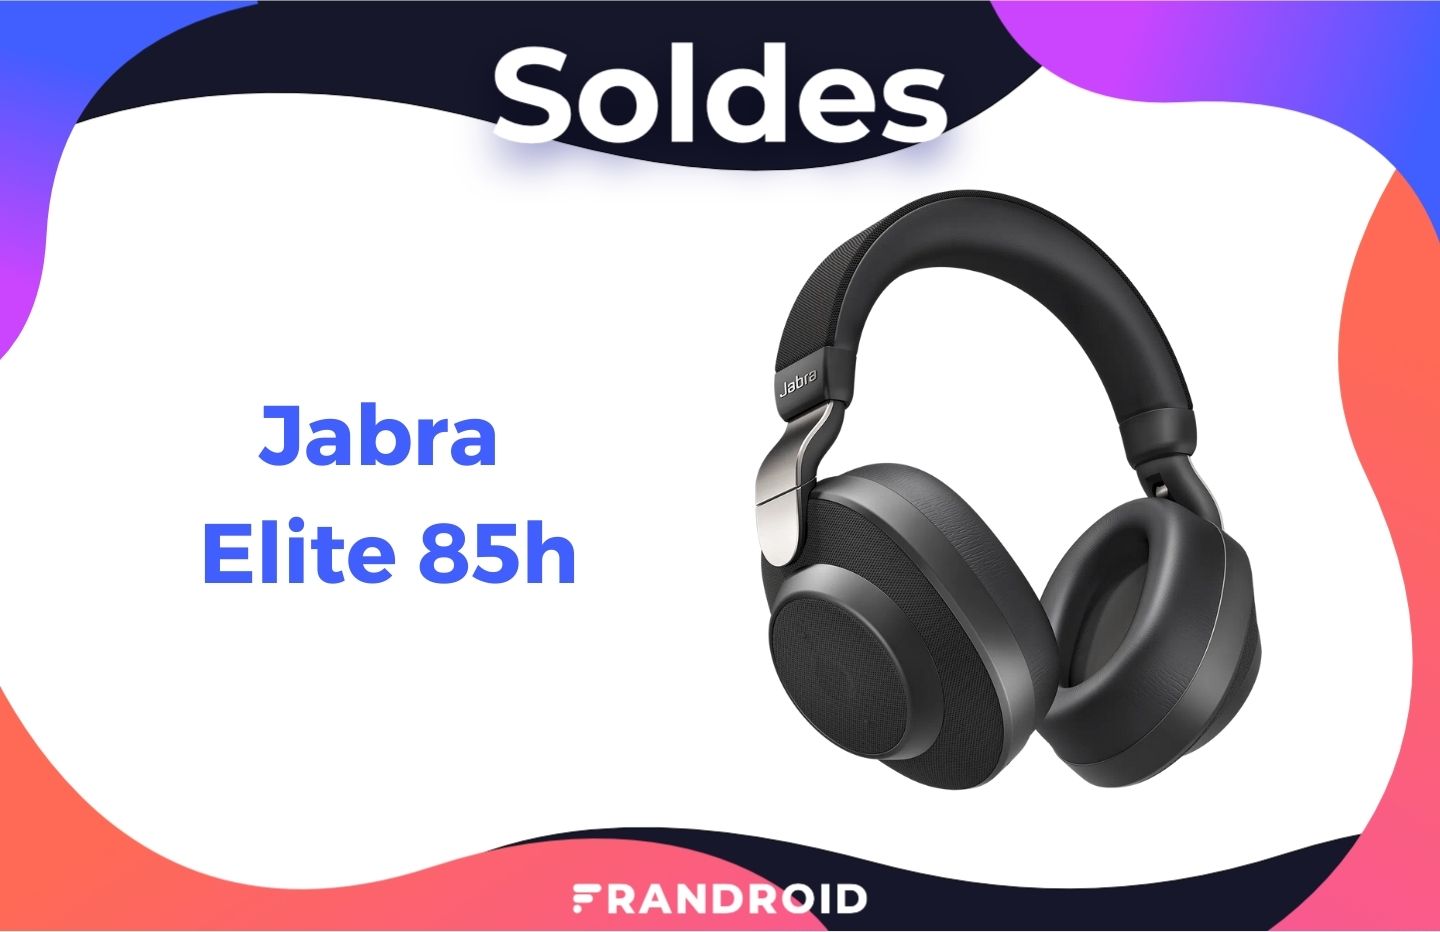 Le casque sans fil Jabra Elite 85h est à moitié prix pendant les soldes